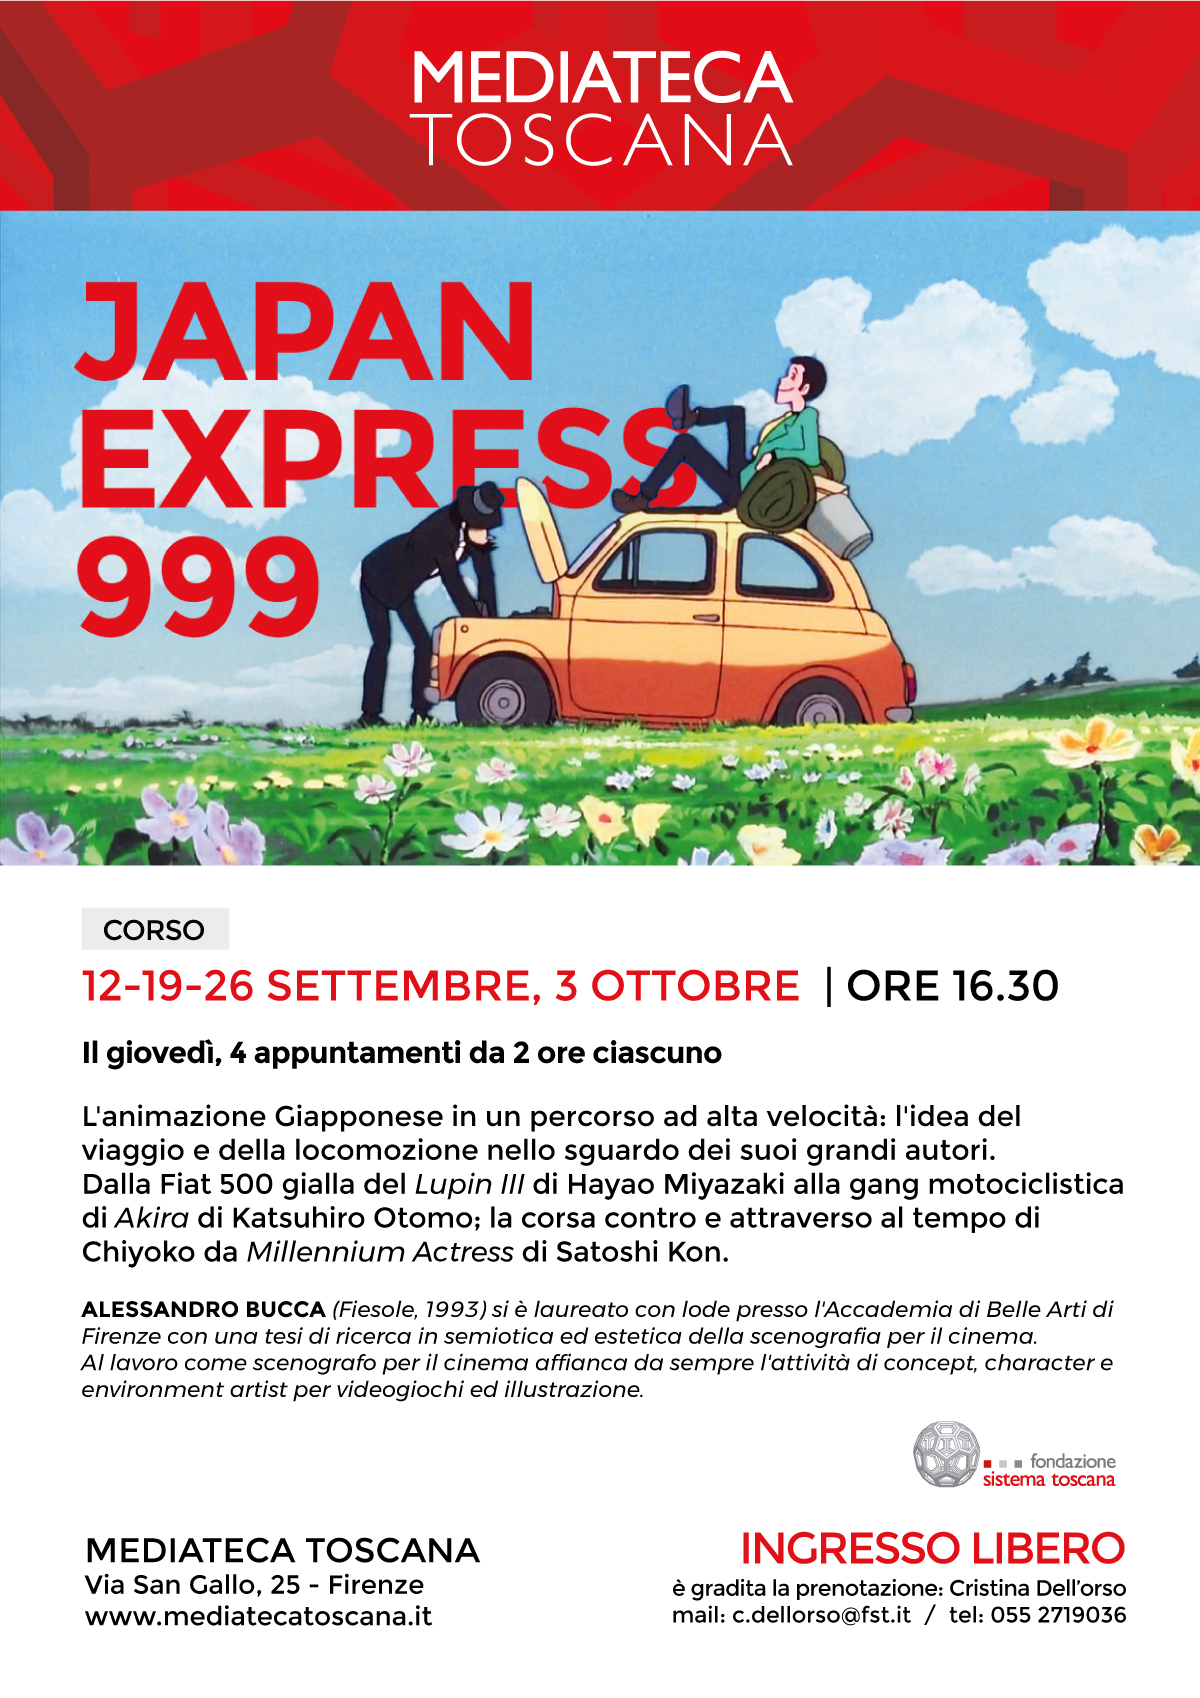 Japan Express 999 